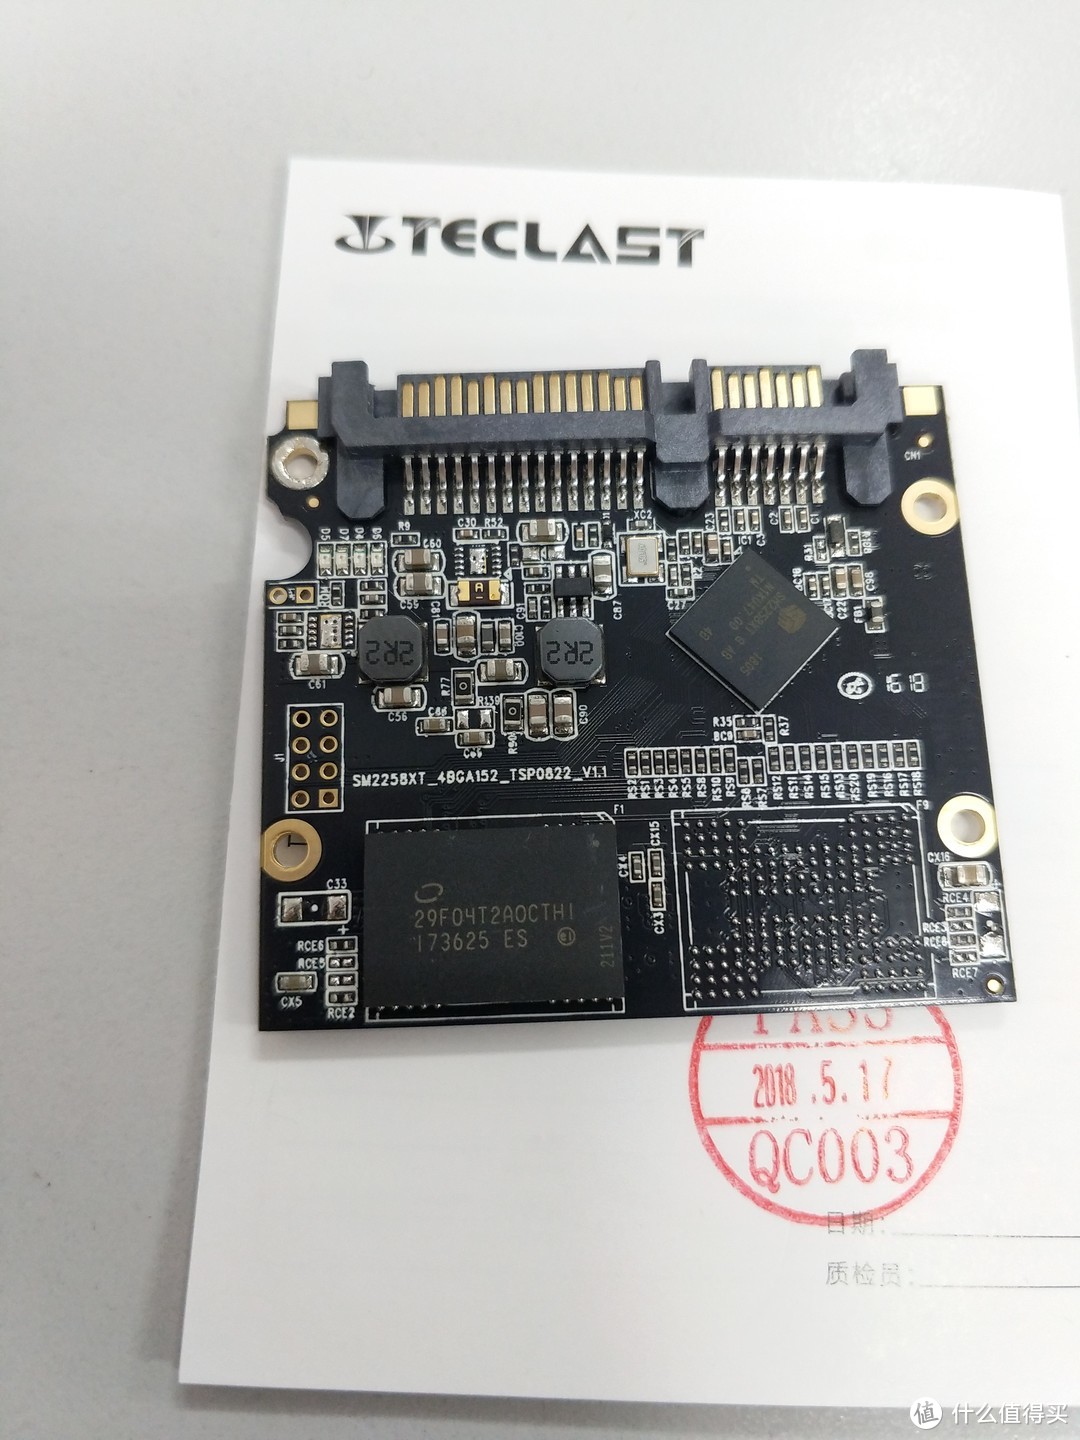 暴力拆解看主控颗粒—Teclast 台电 A800 固态硬盘 开箱测评报告